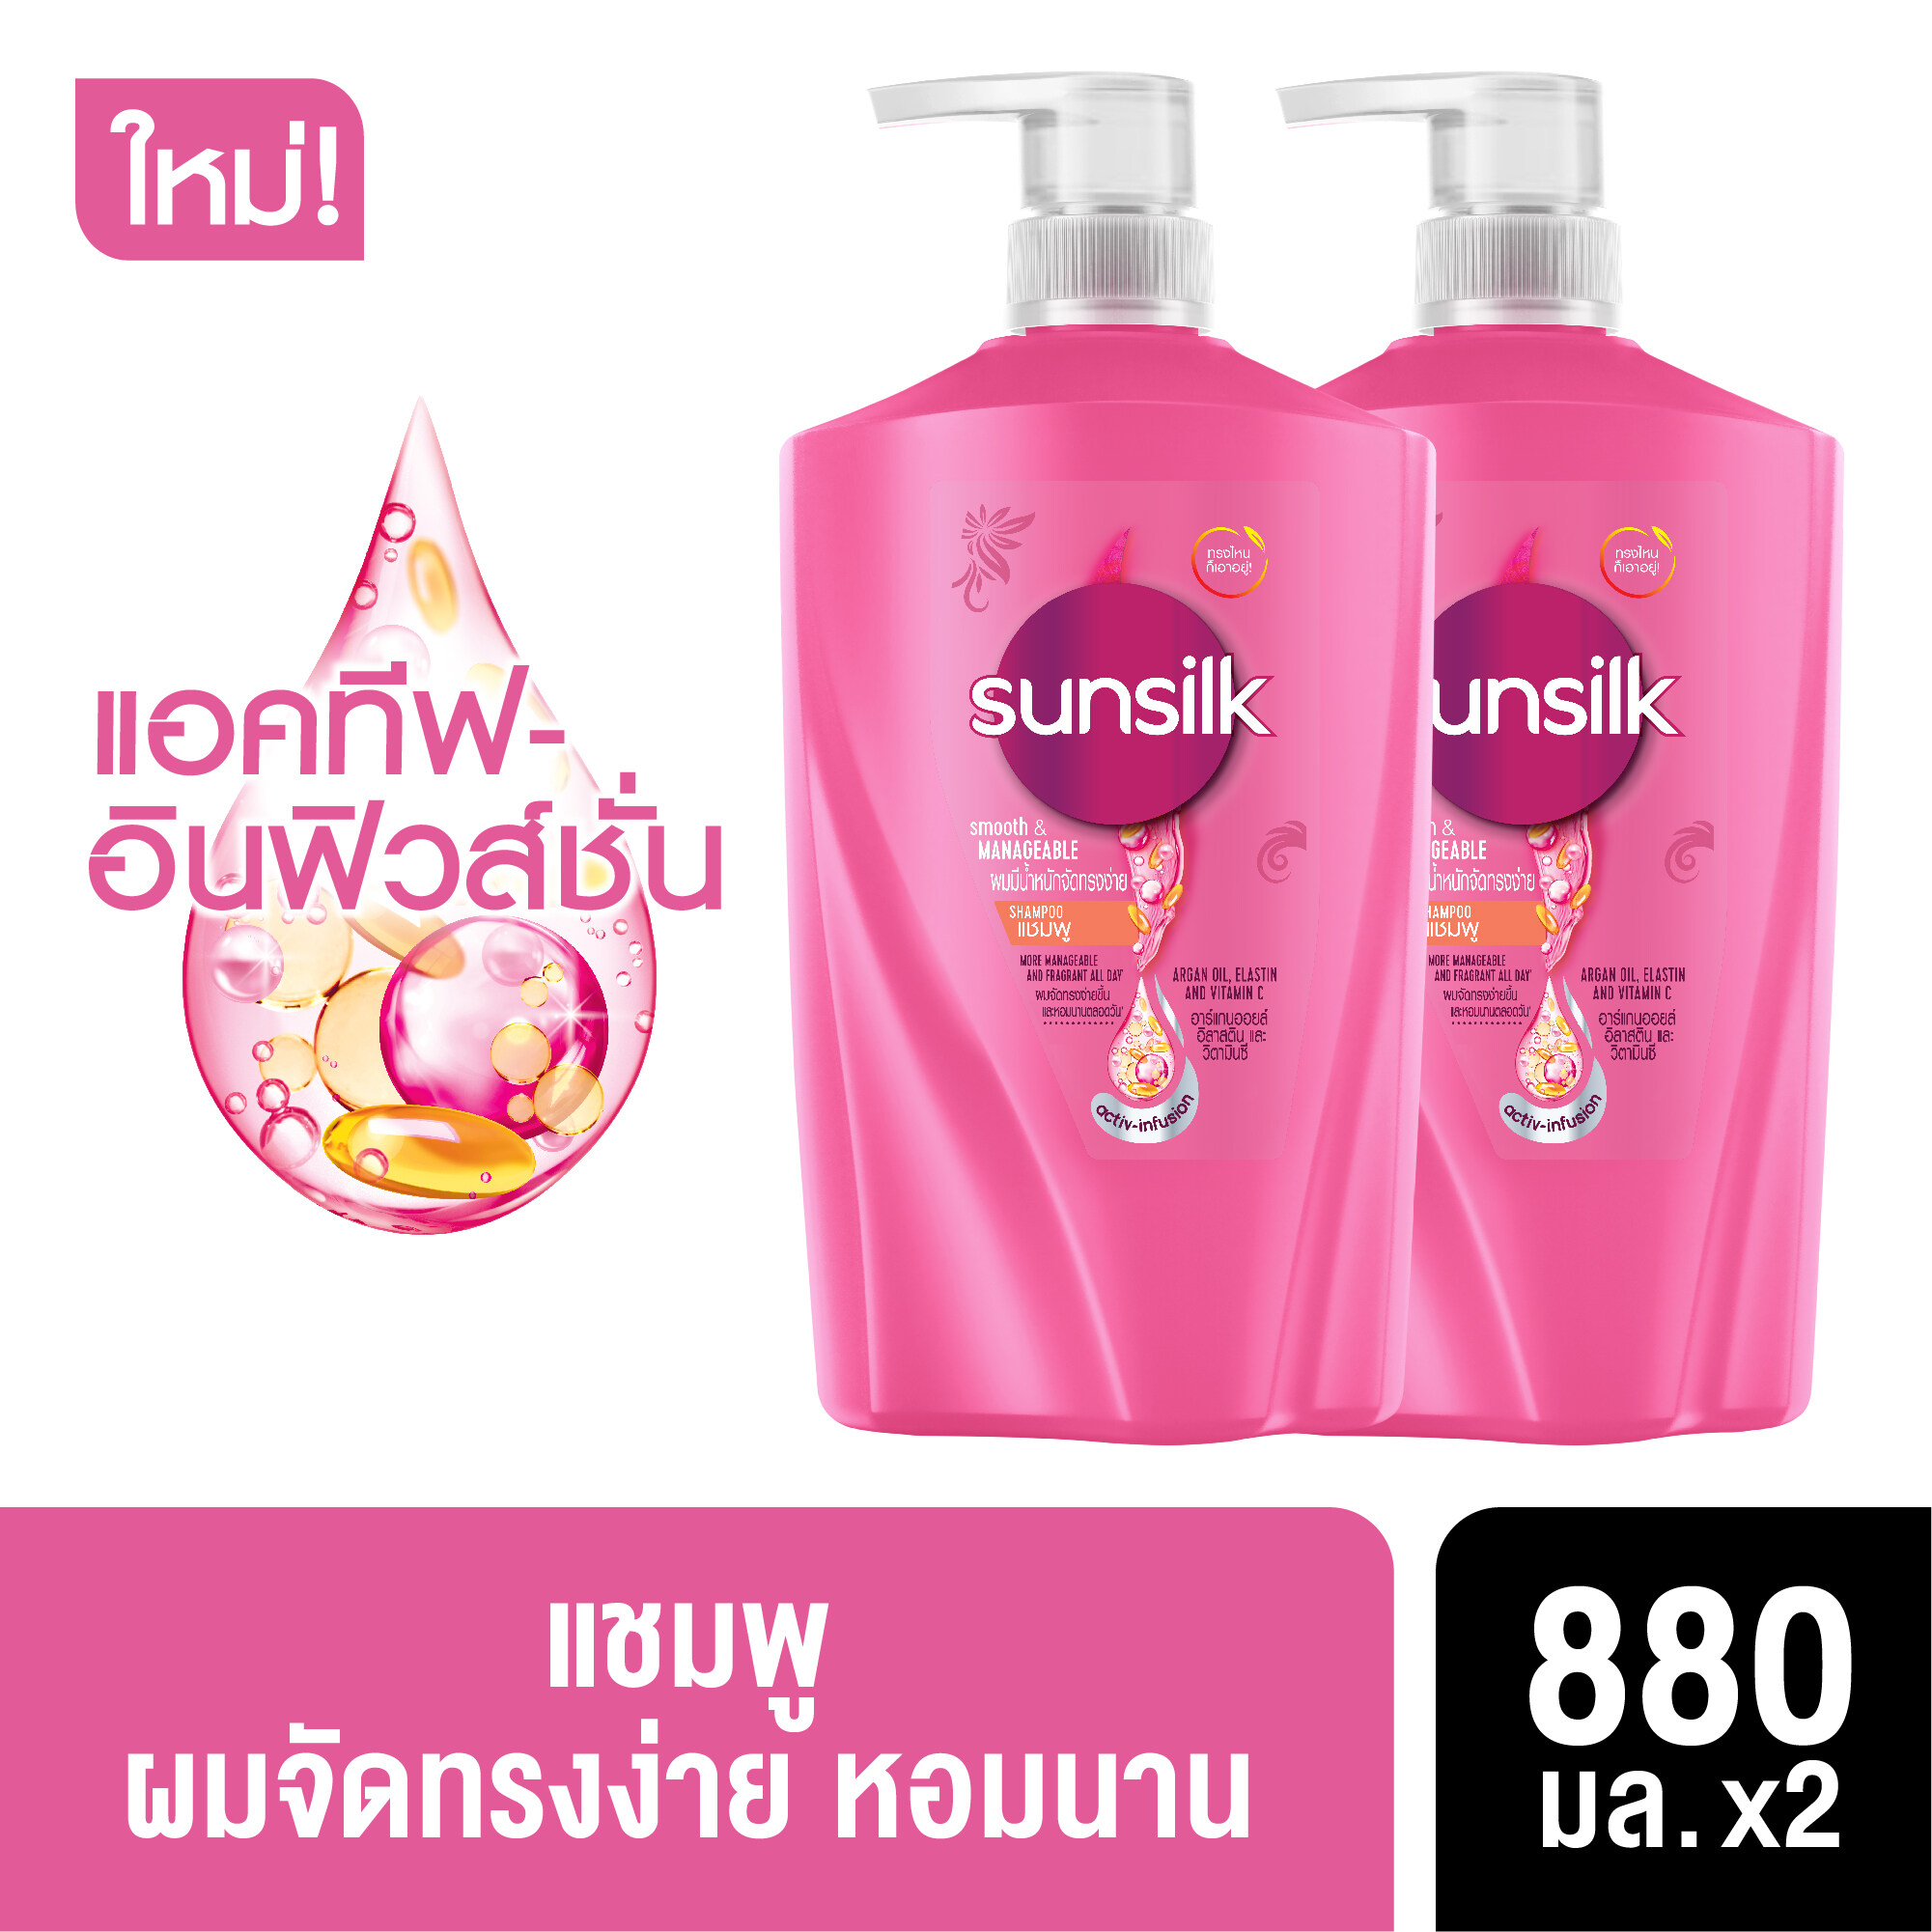 [ส่งฟรี] ซันซิล แชมพู สมูท แอนด์ เมเนจเอเบิ้ล สีชมพู ผมมีน้ำหนัก จัดทรงง่าย 880 มล. x2 Sunsilk Shampoo Smooth and Manageable Pink 880 ml. x2( ยาสระผม ครีมสระผม แชมพู shampoo ) ของแท้